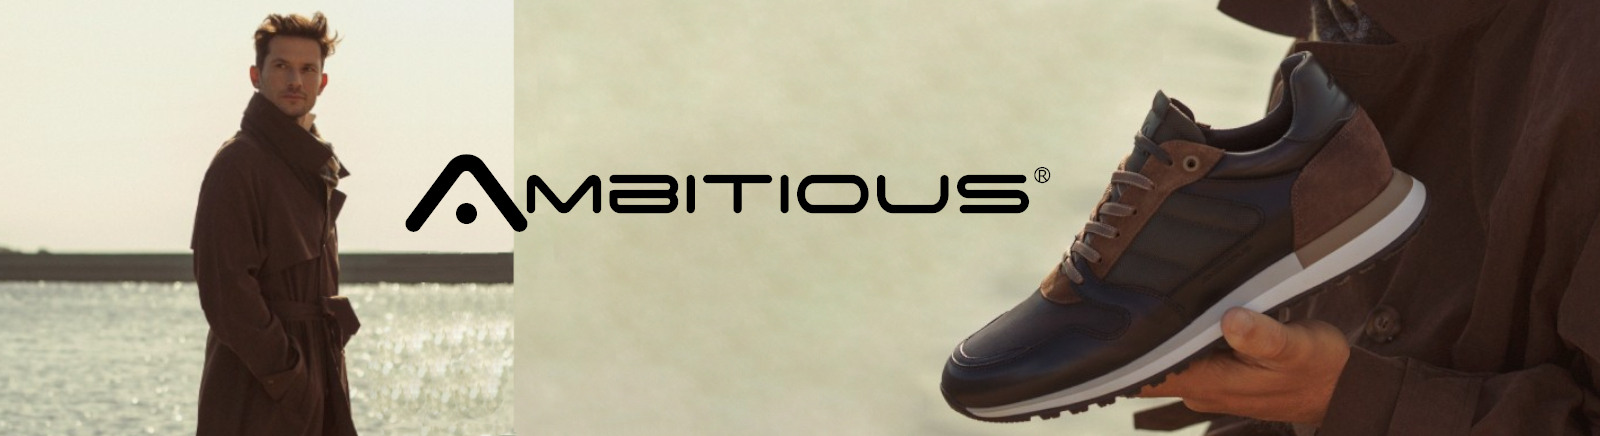 Ambitious Herren-Schuhe online entdecken bei GISY Schuhe